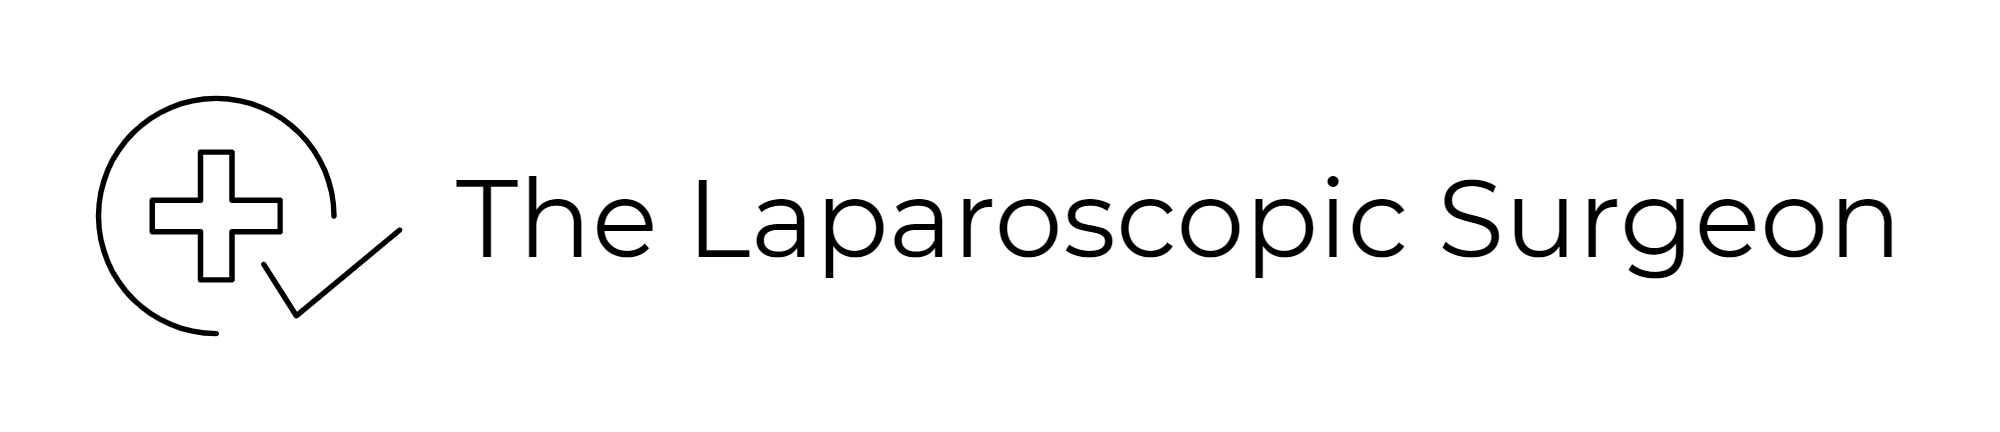 The Laparoscopic Surgeon-logo